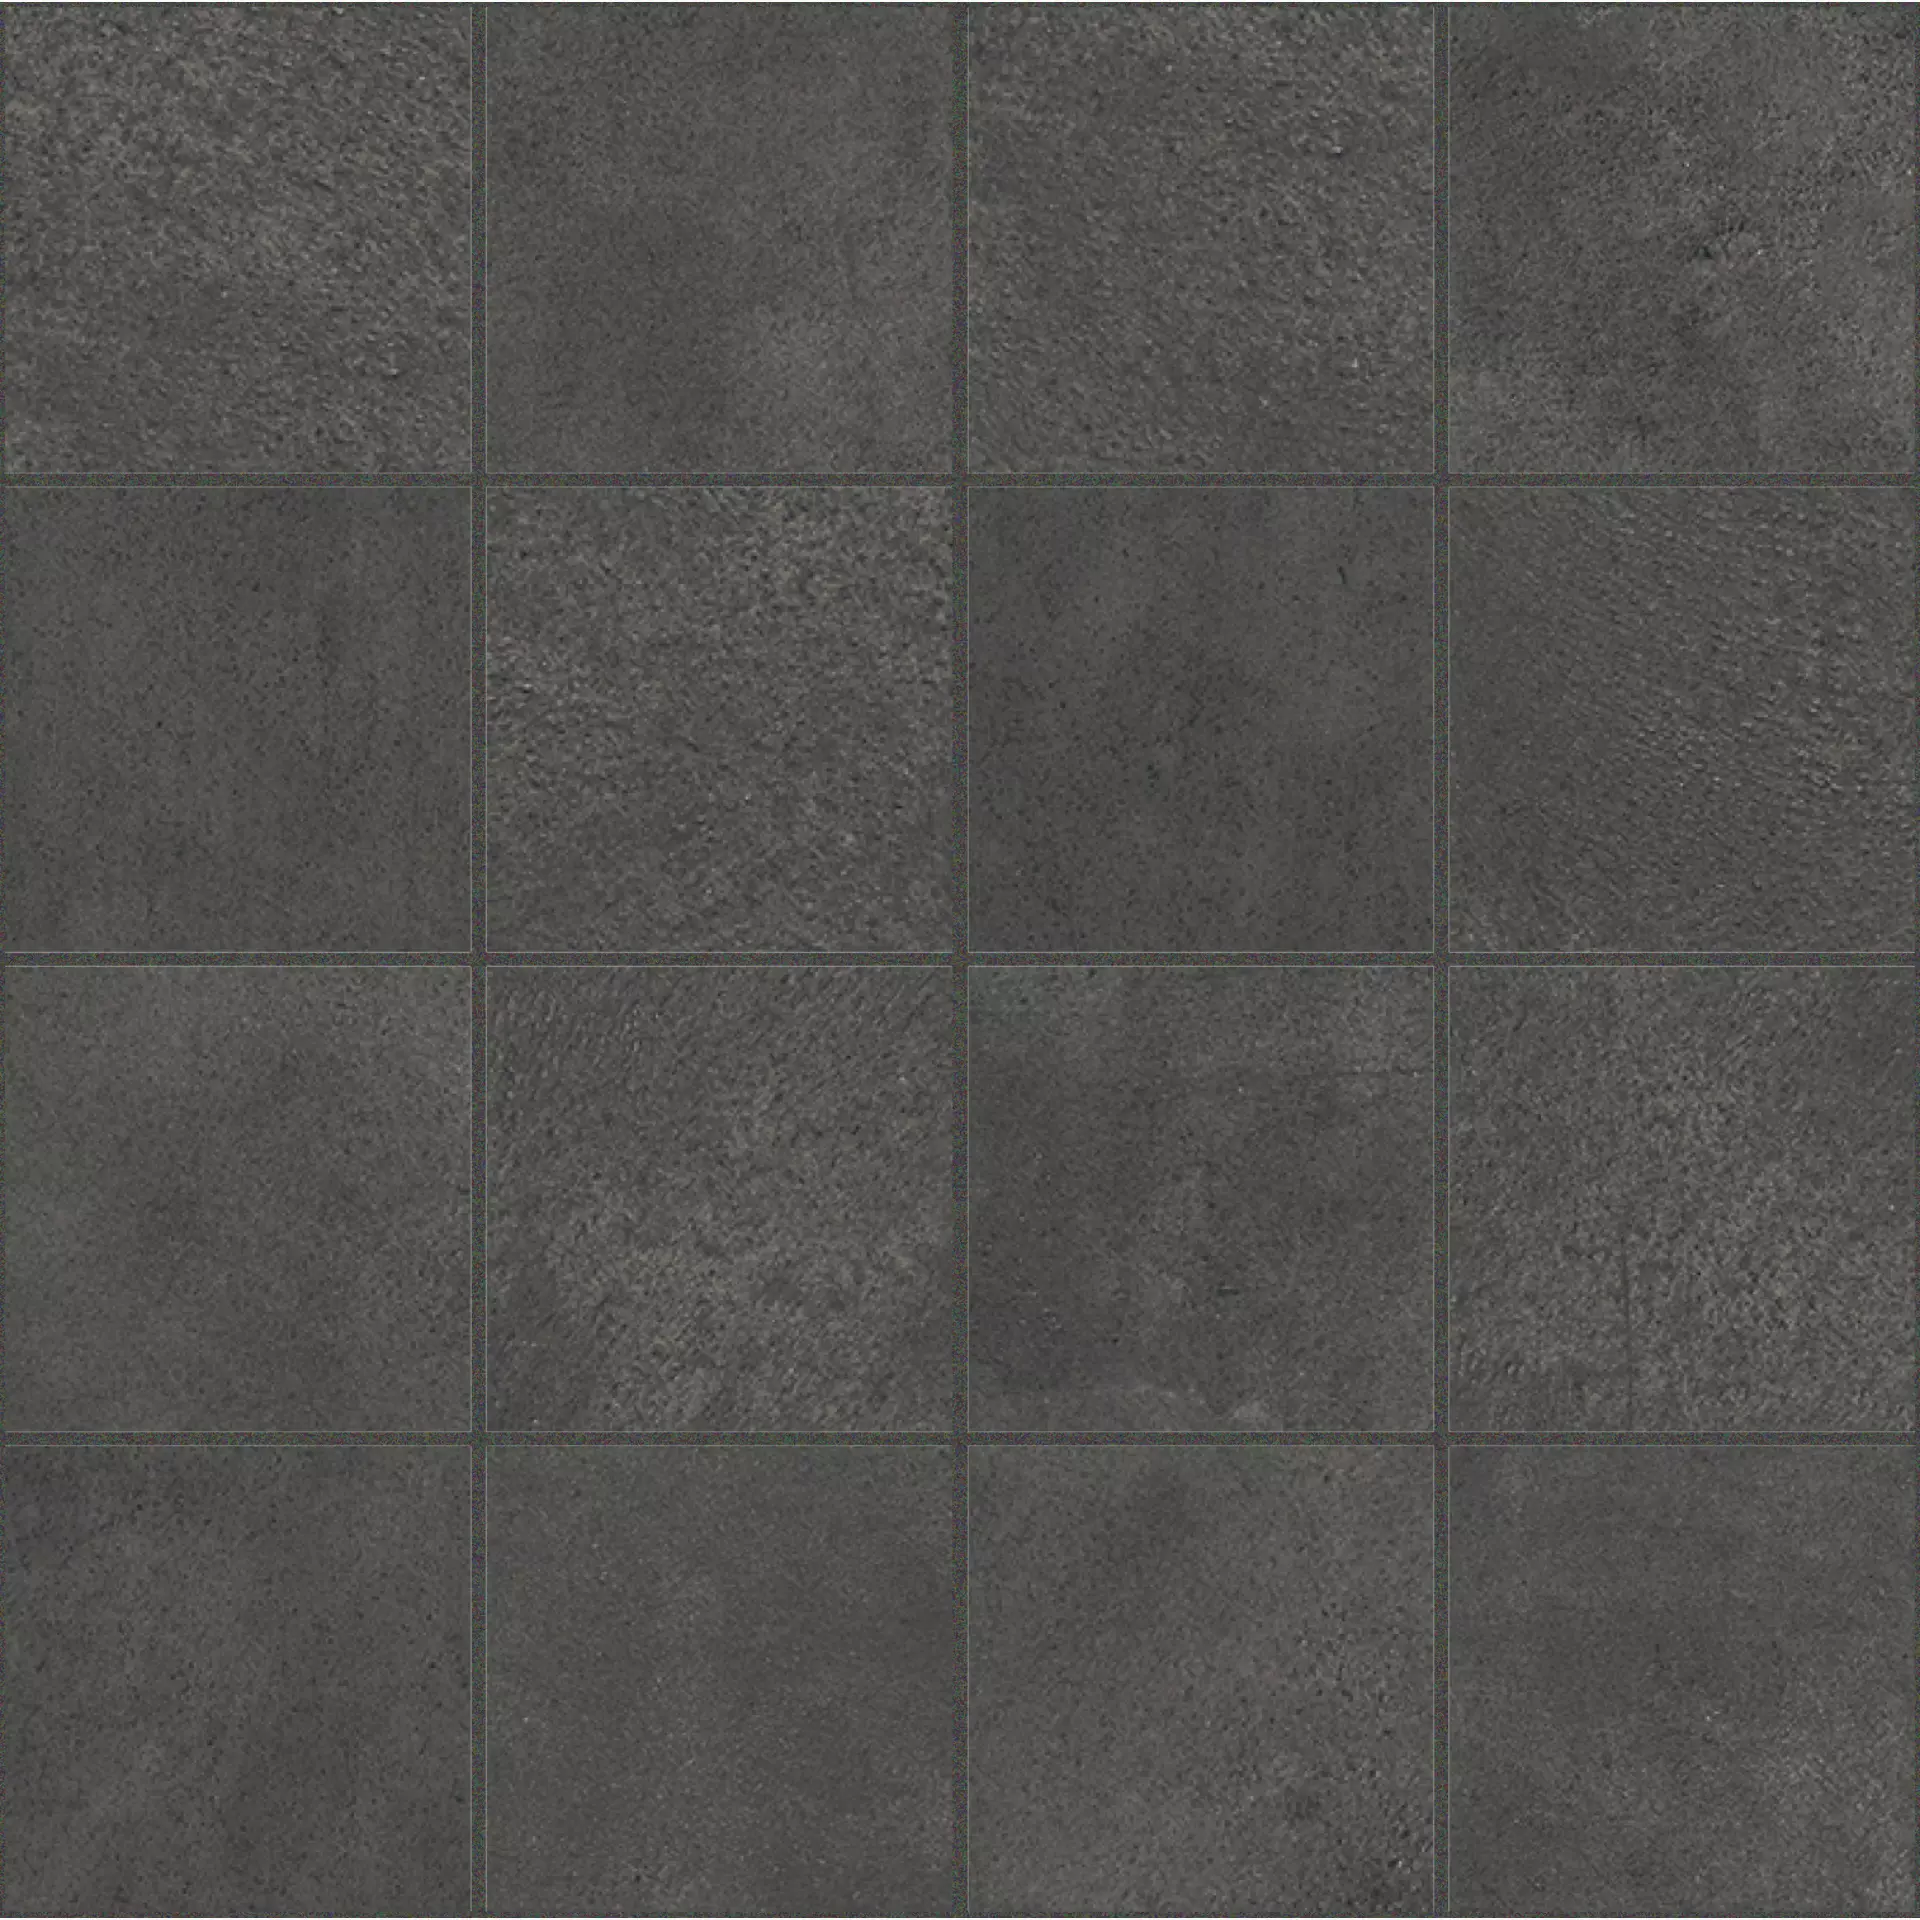 Florim Buildtech Ce Coal Naturale – Matt Ce Coal 767555 matt natur 7,5x7,5cm Mosaik 7,5x7,5 rektifiziert 6mm